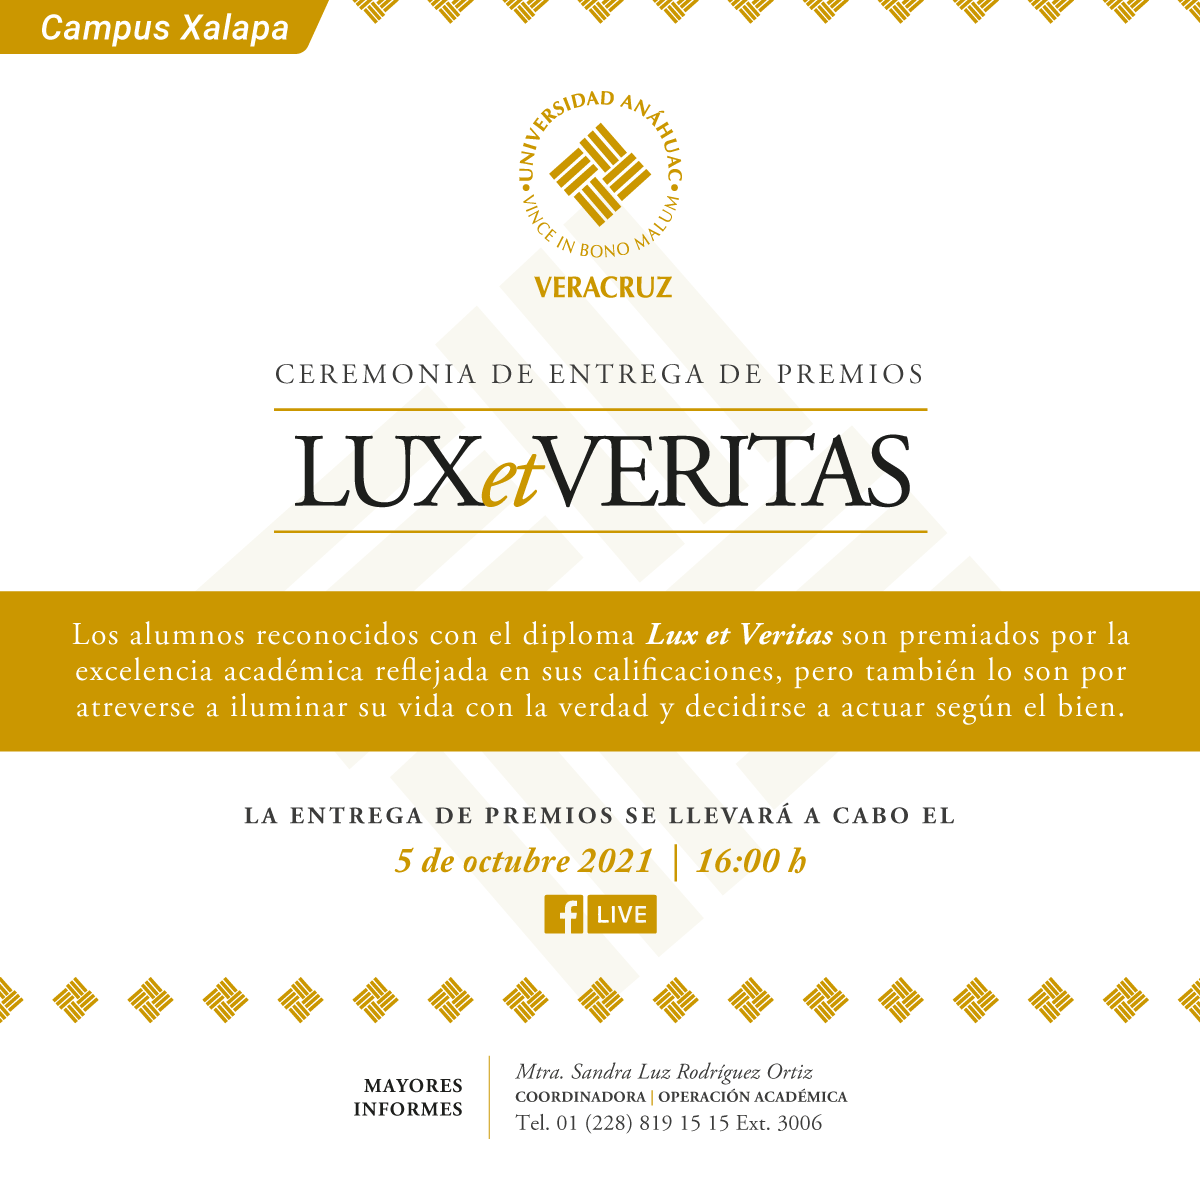 Ceremonia de Entrega de Premios Lux et Veritas